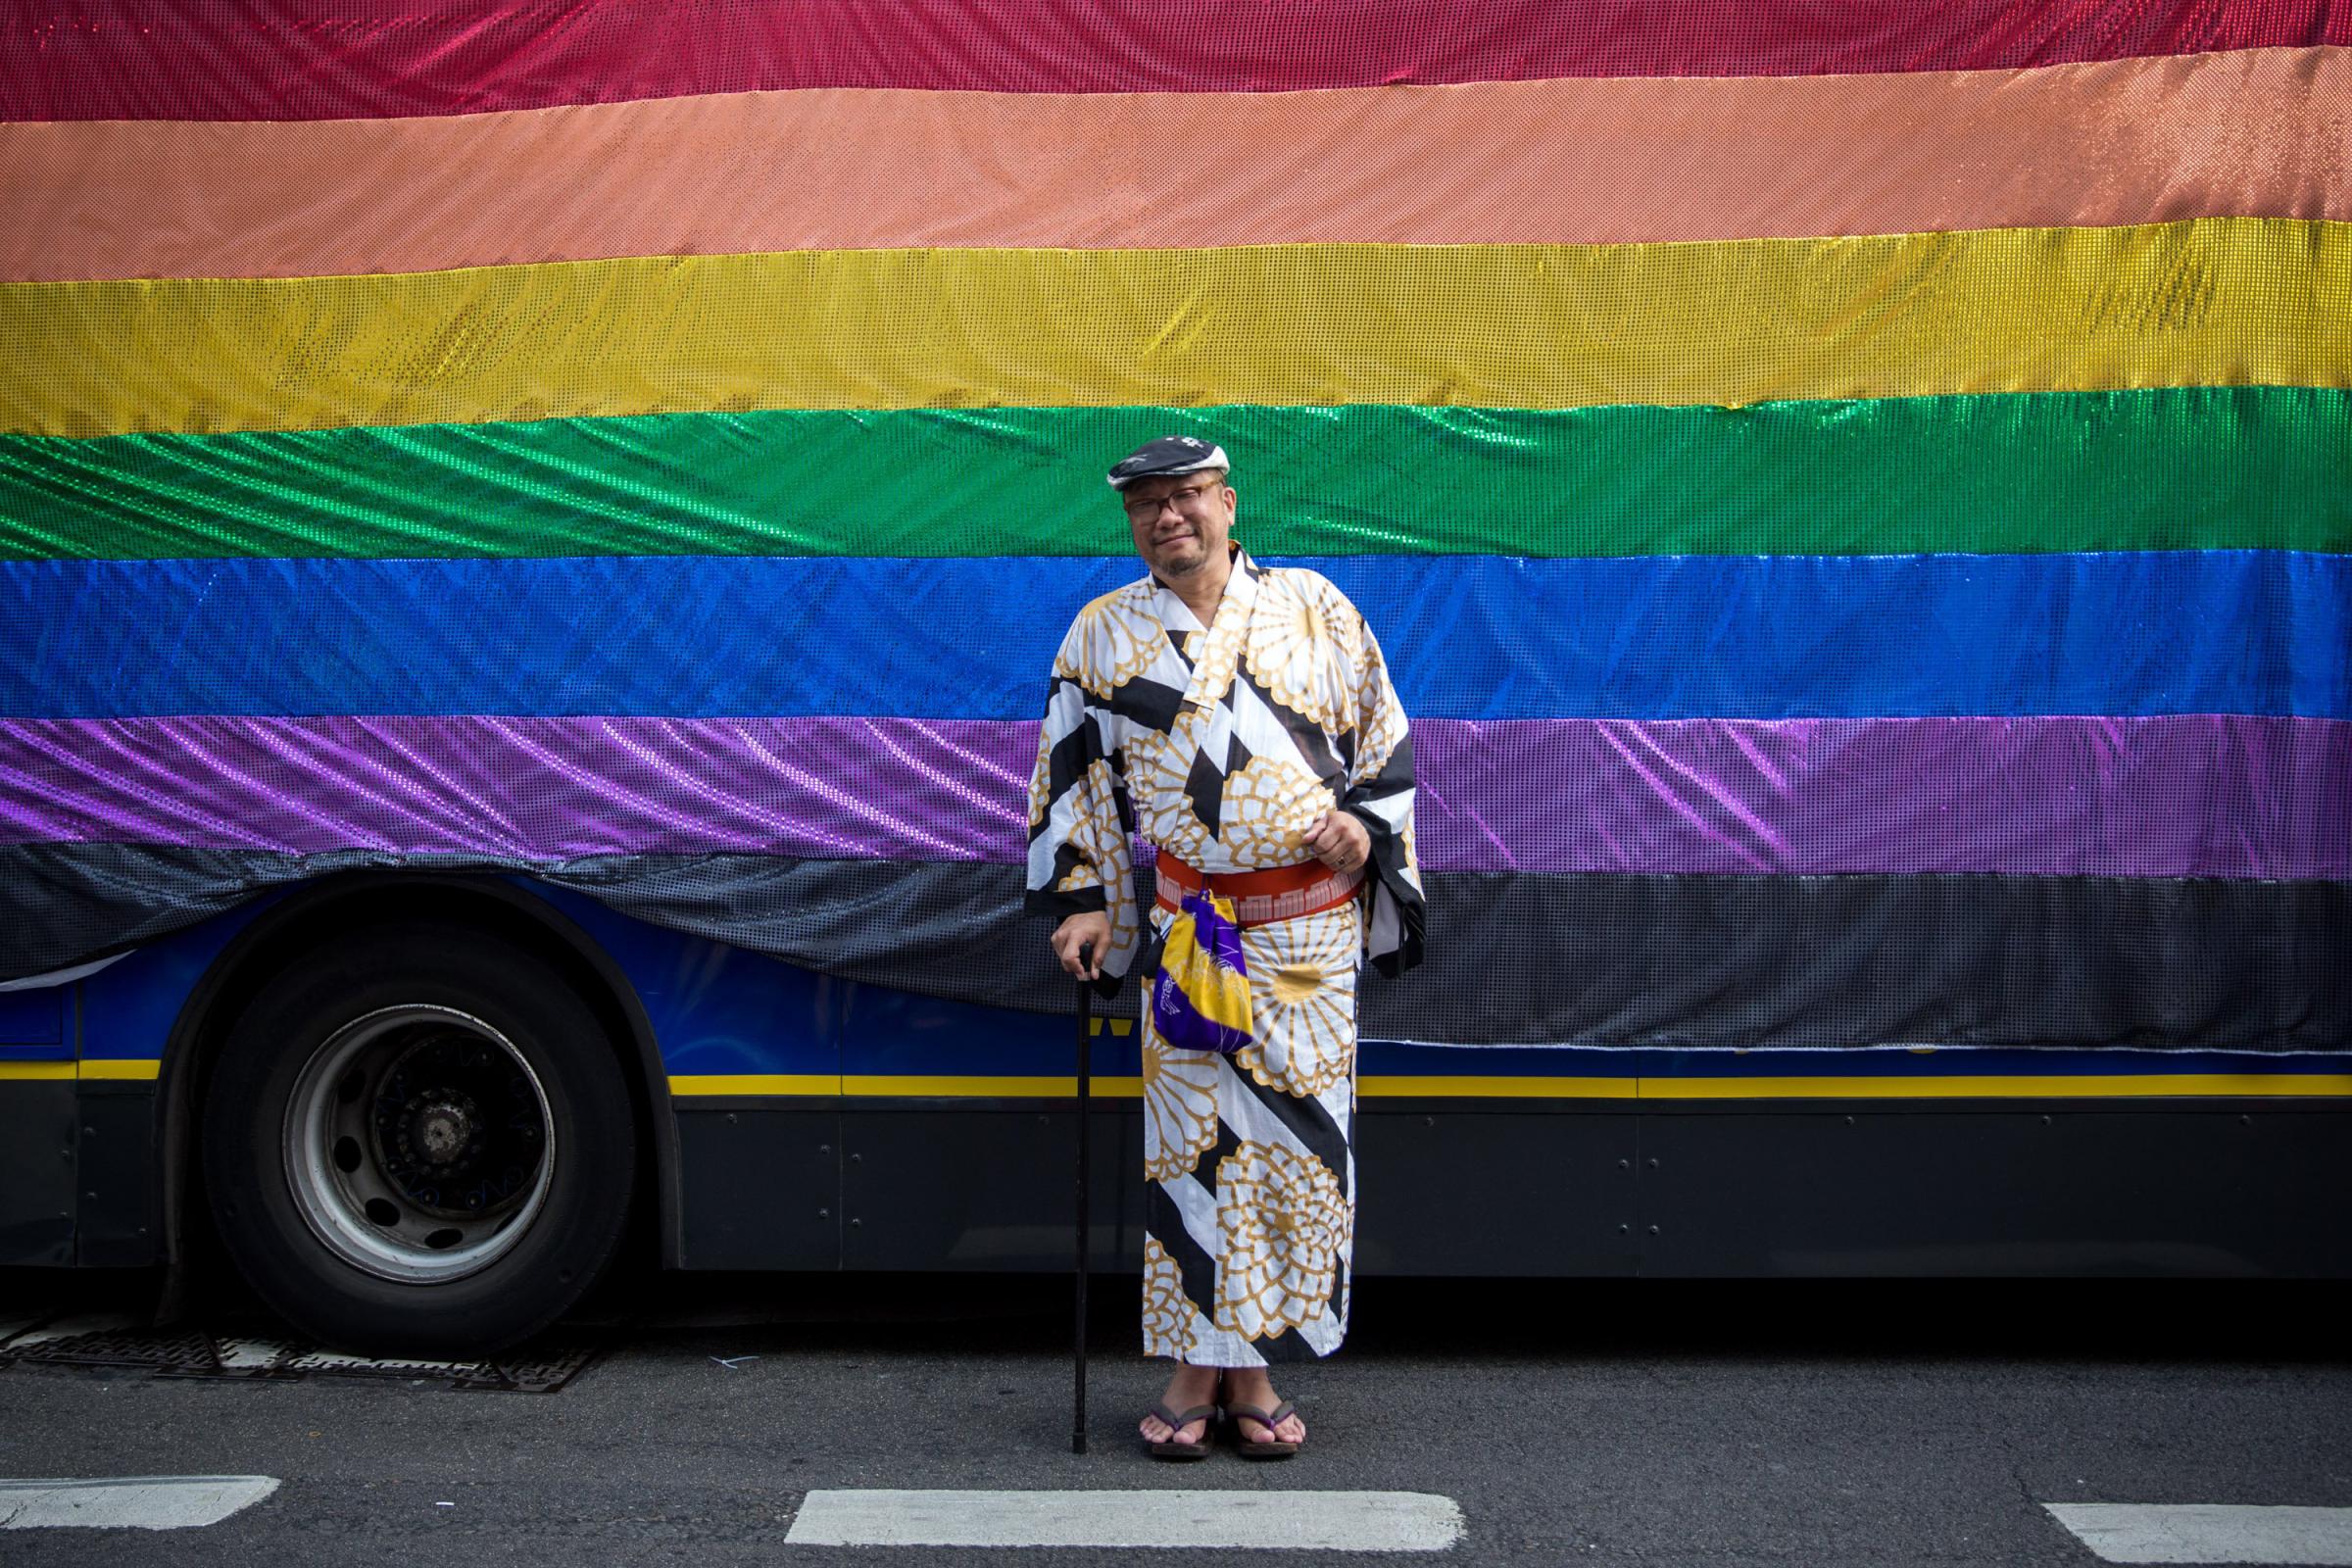 gay pride parade 2015 LGBT